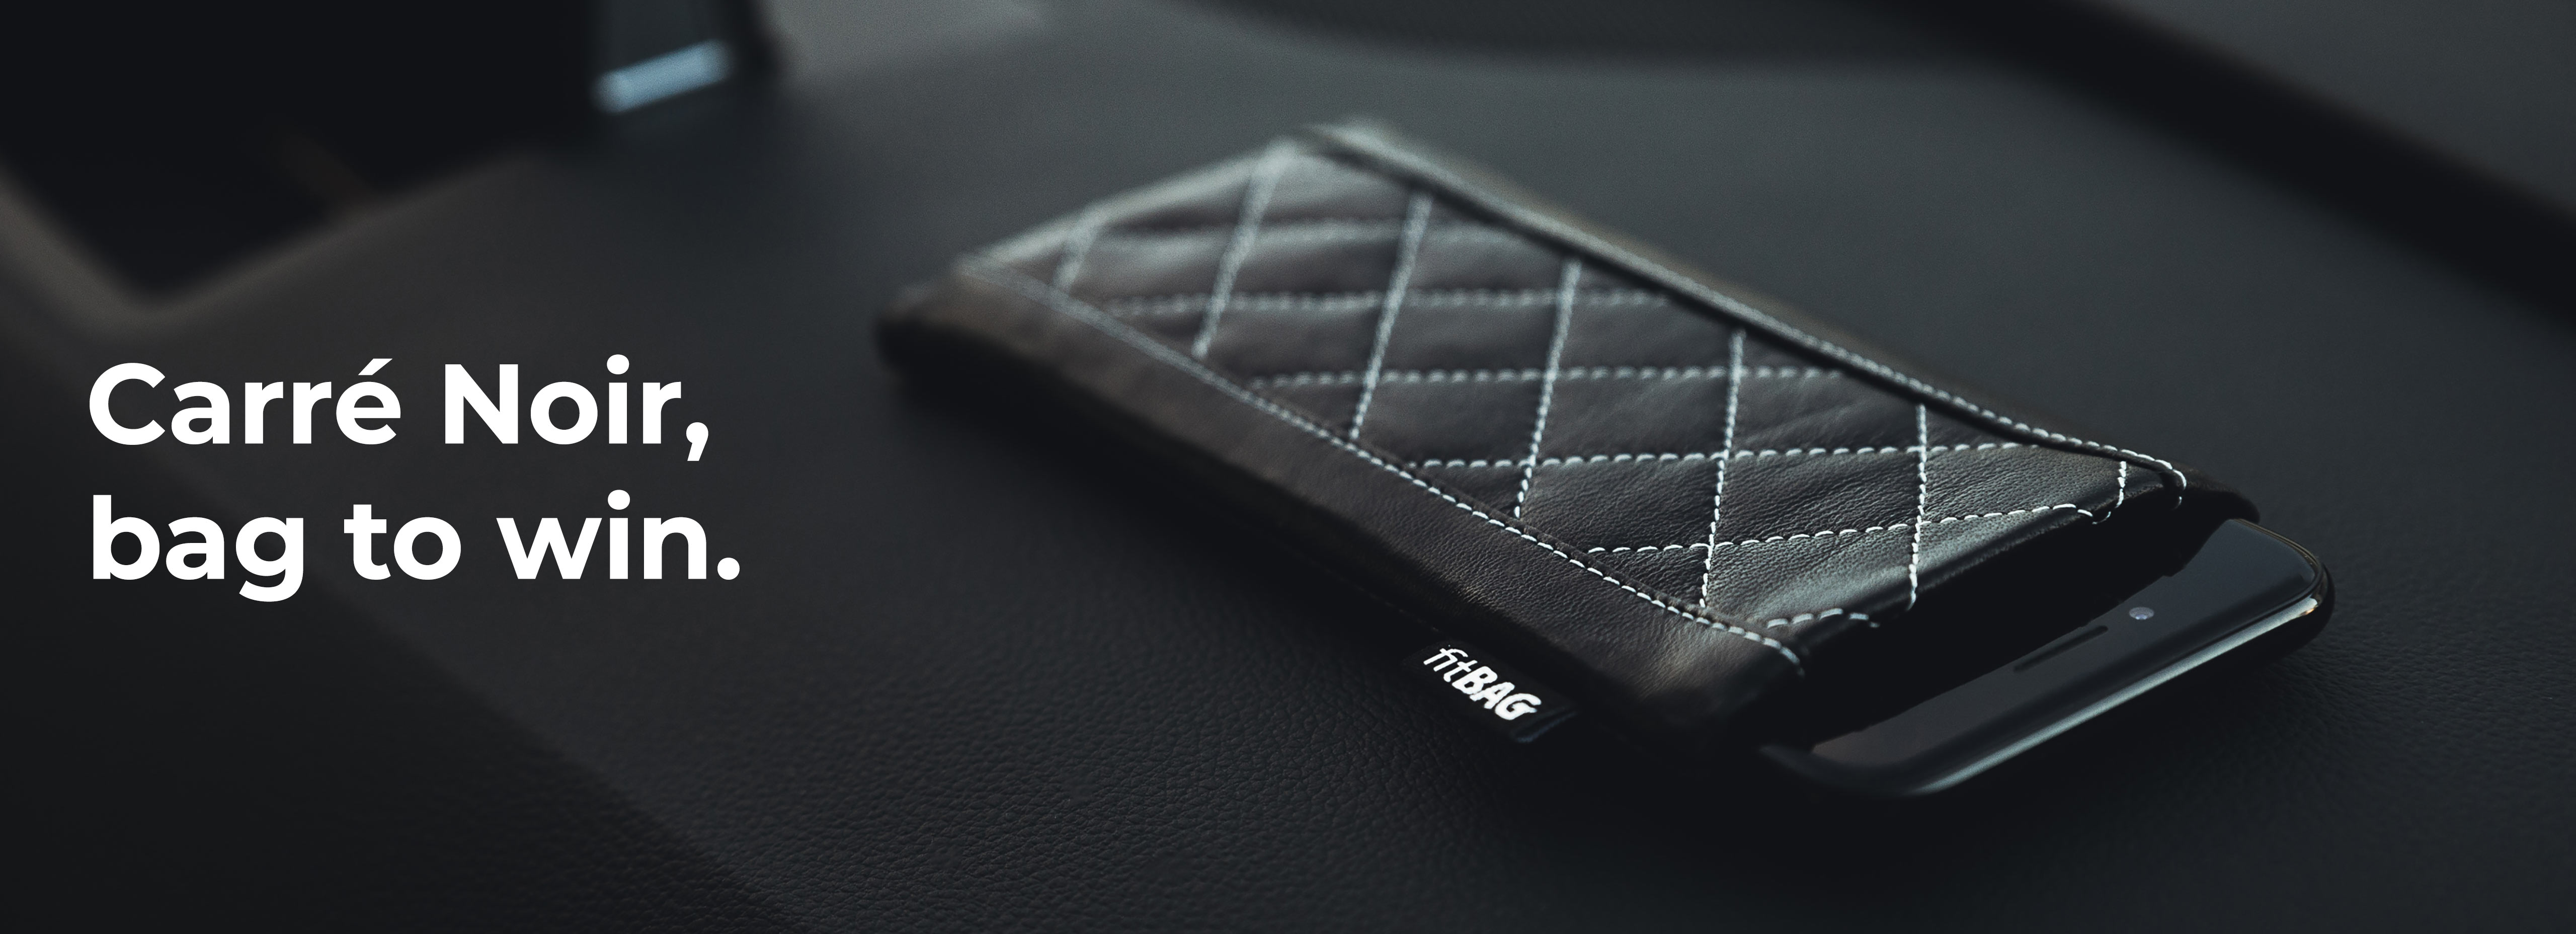 Nettoyage de l’écran fitBAG Beat Blanc en Cuir Nappa intérieur Pochette customisée adaptée Housse de Protection pour Samsung Galaxy Z Fold 2 5G Fabriqué en Allemagne 